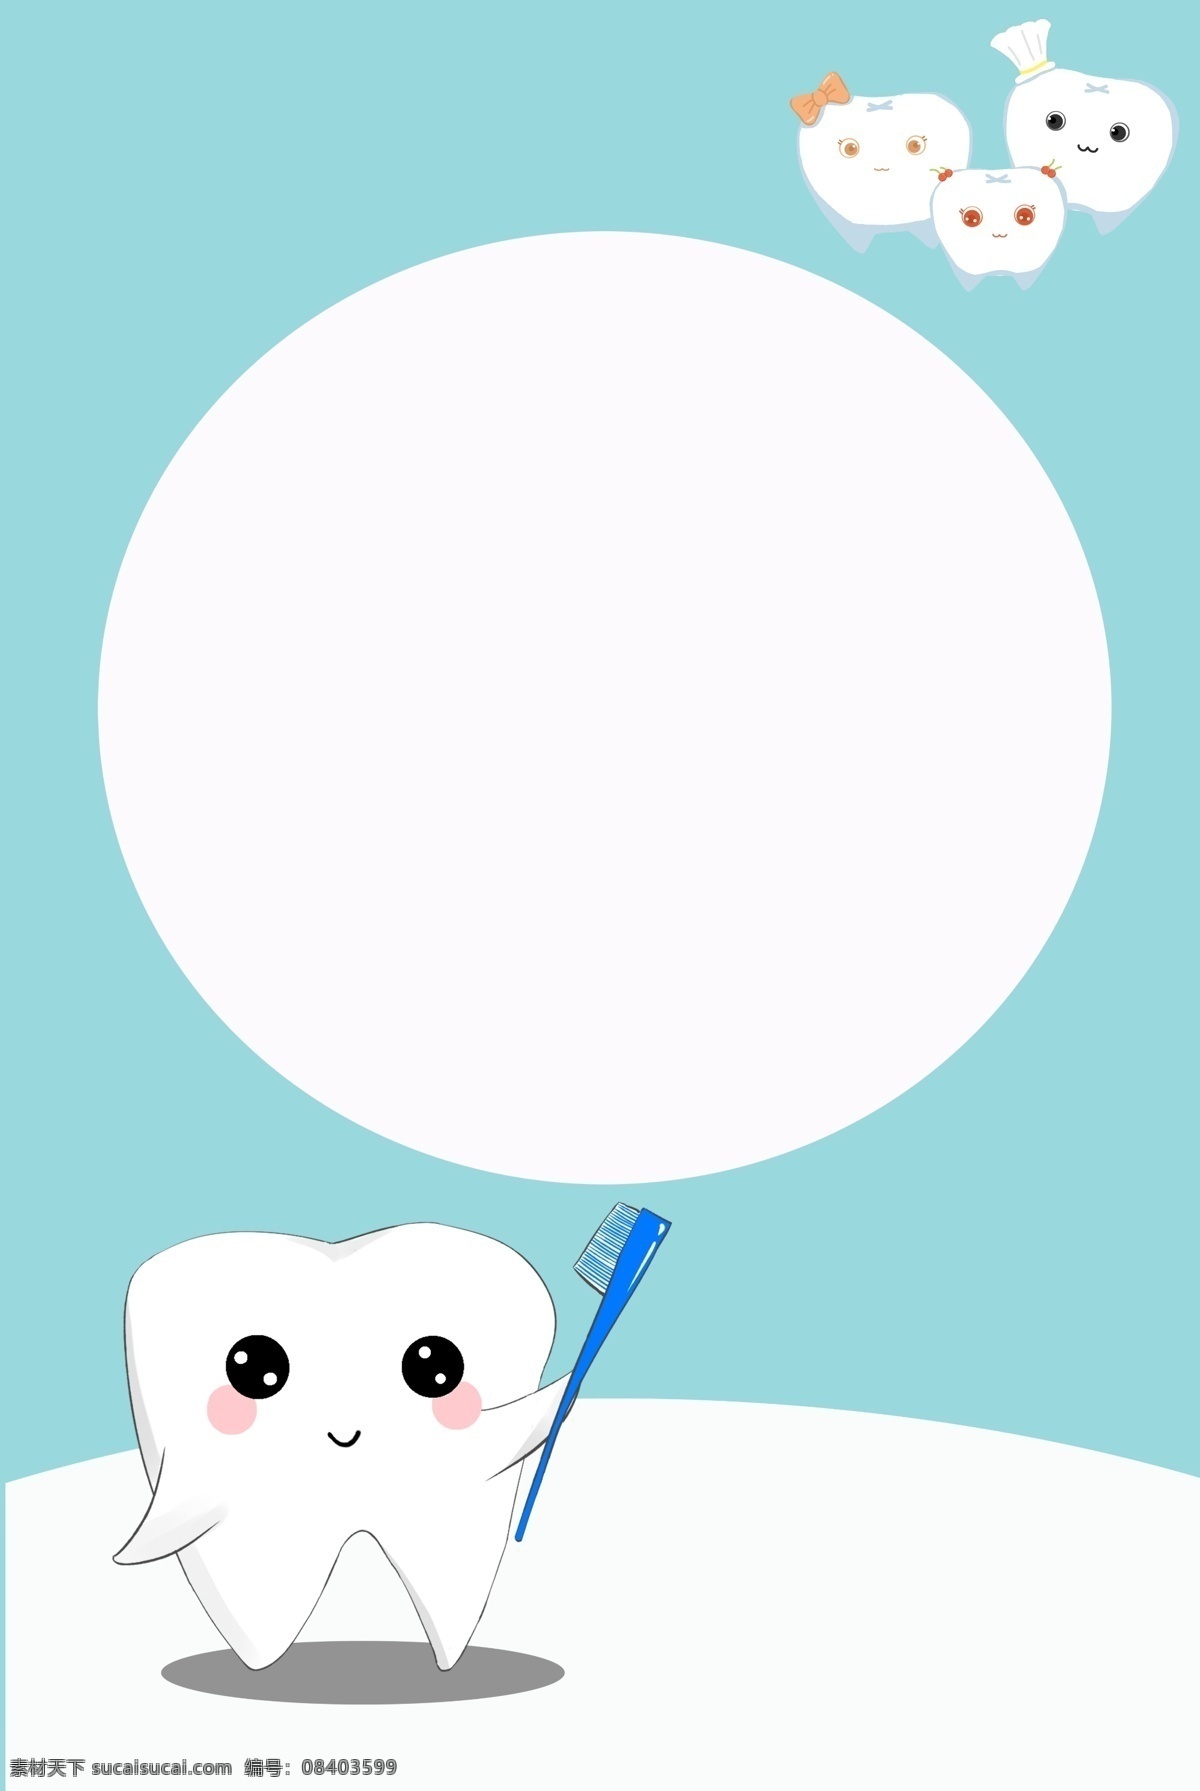 医疗 牙医 牙科 背景 医生 牙齿 卡通 看牙 拔牙 简约 诊所 牙科诊所 扁平 医药箱